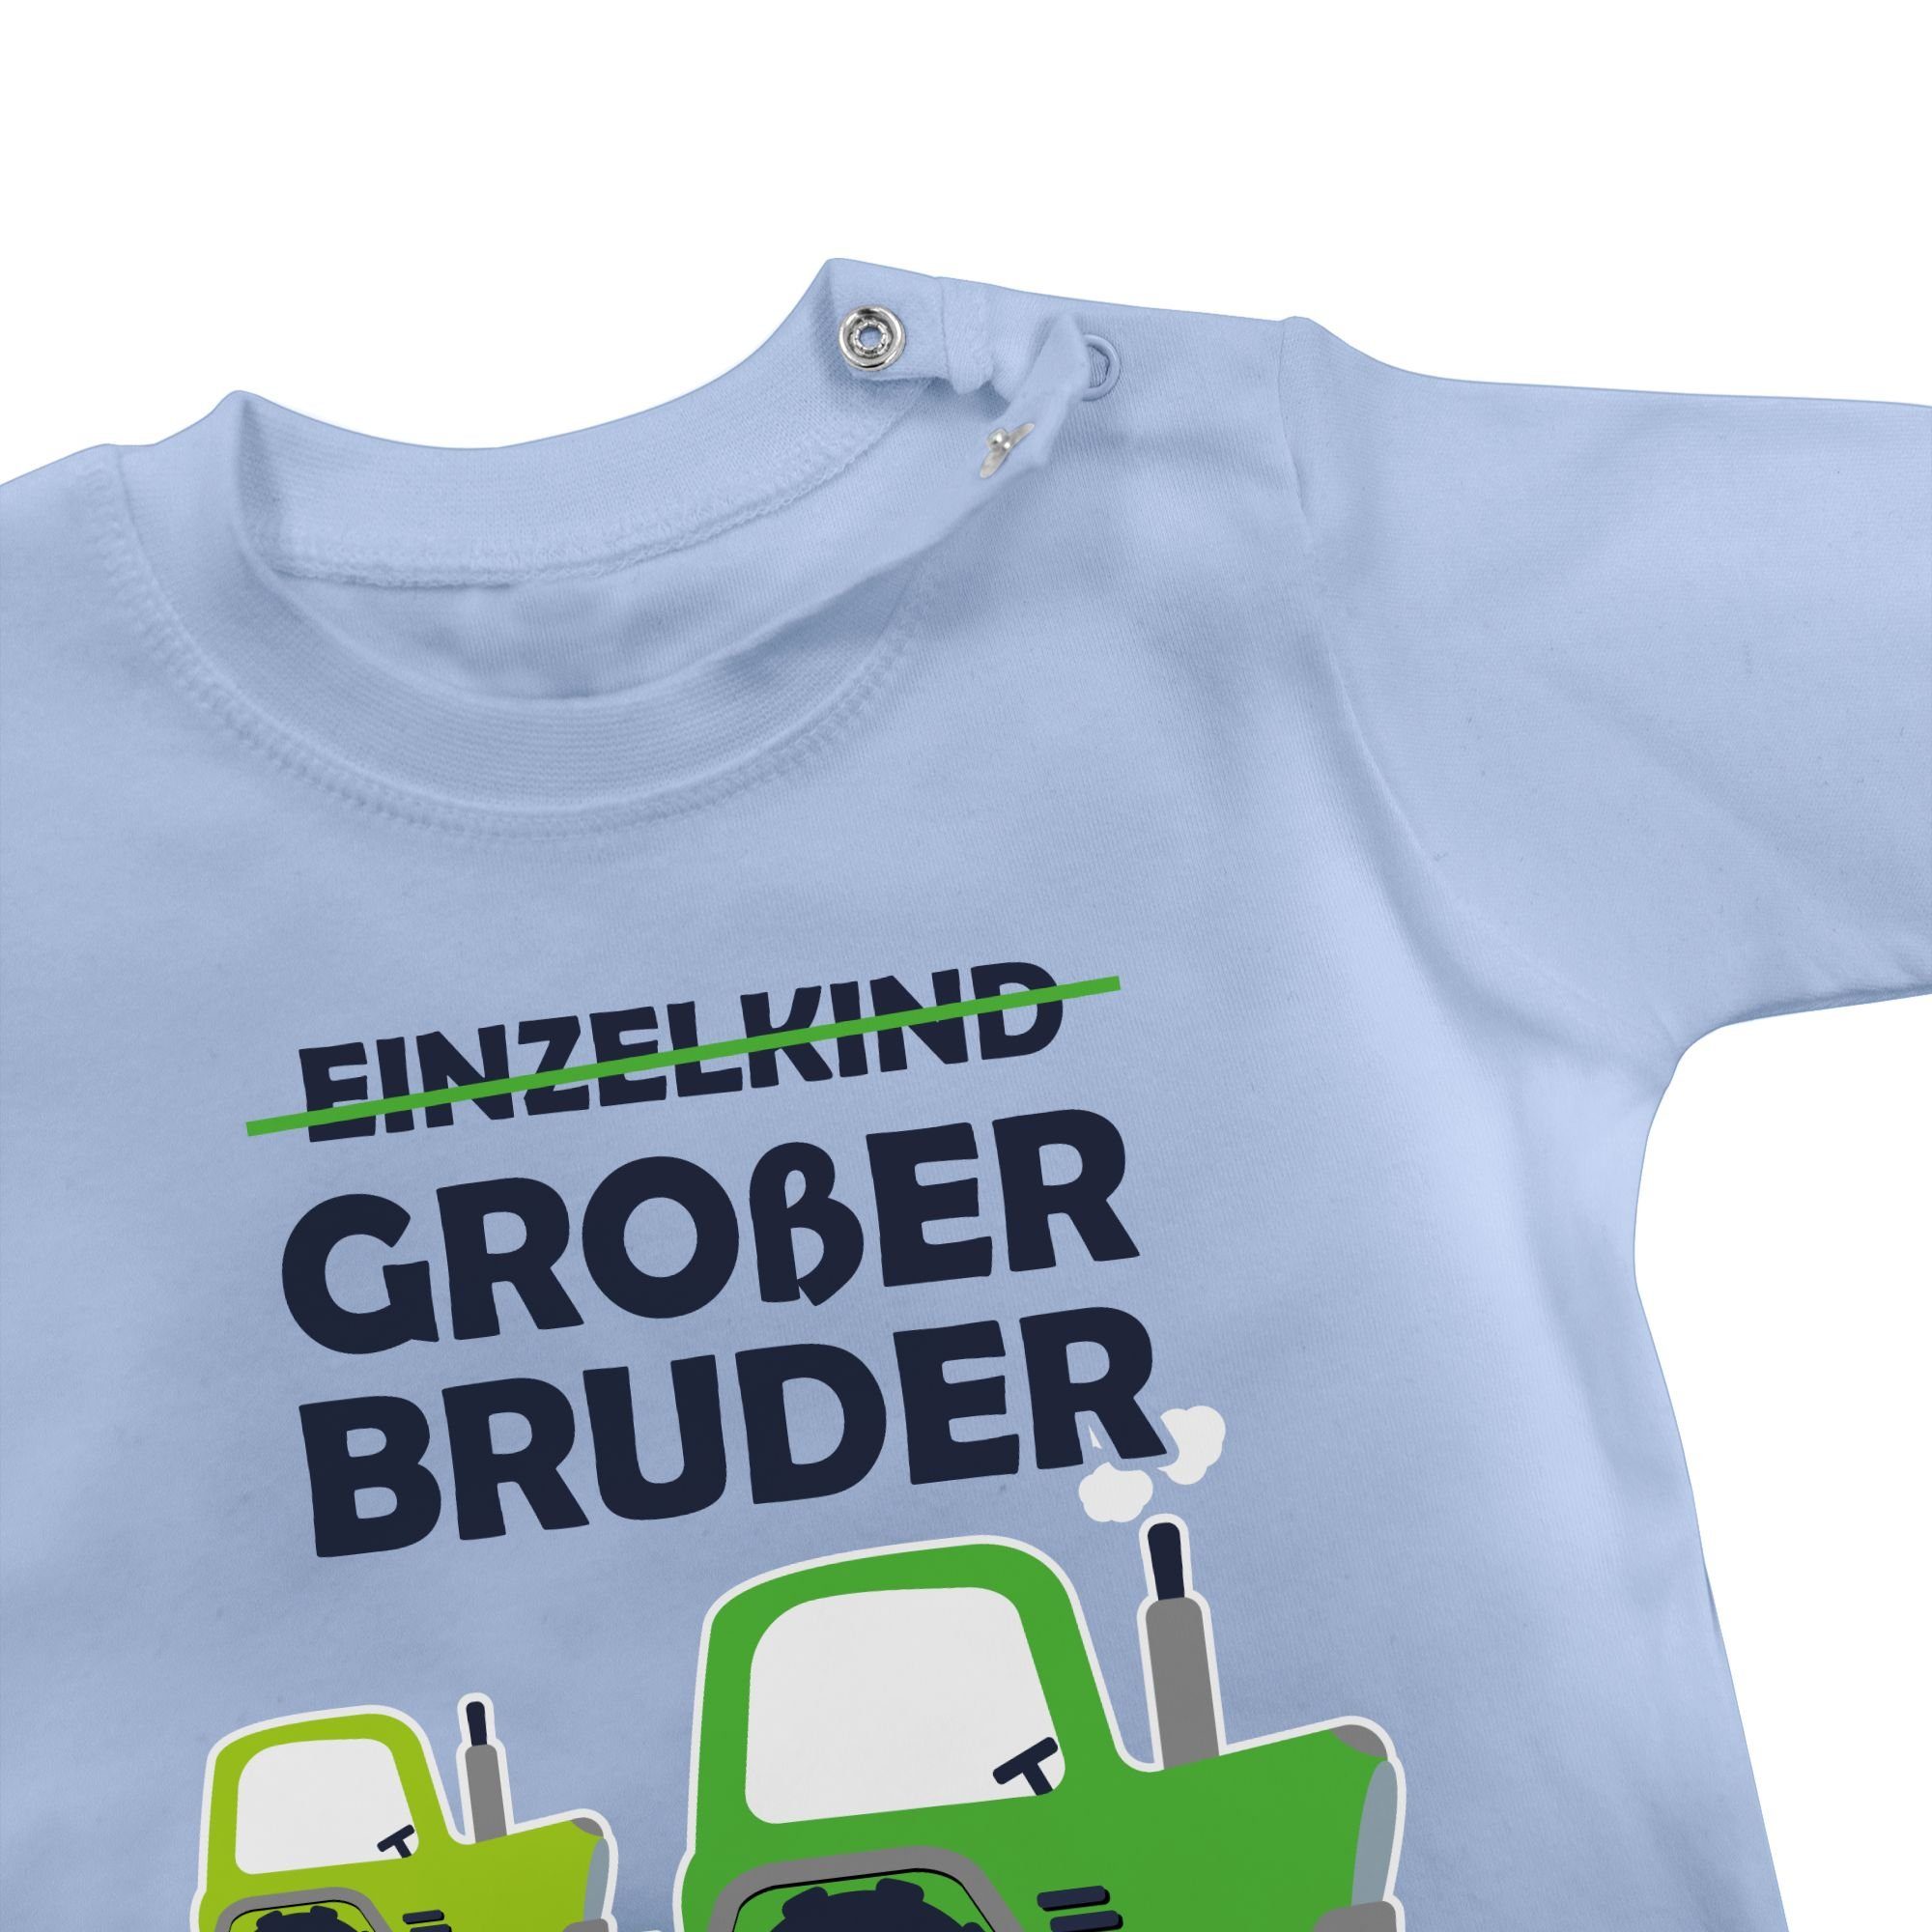 T-Shirt Traktor 1 2023 Großer Großer Bruder Shirtracer Babyblau Bruder Einzelkind